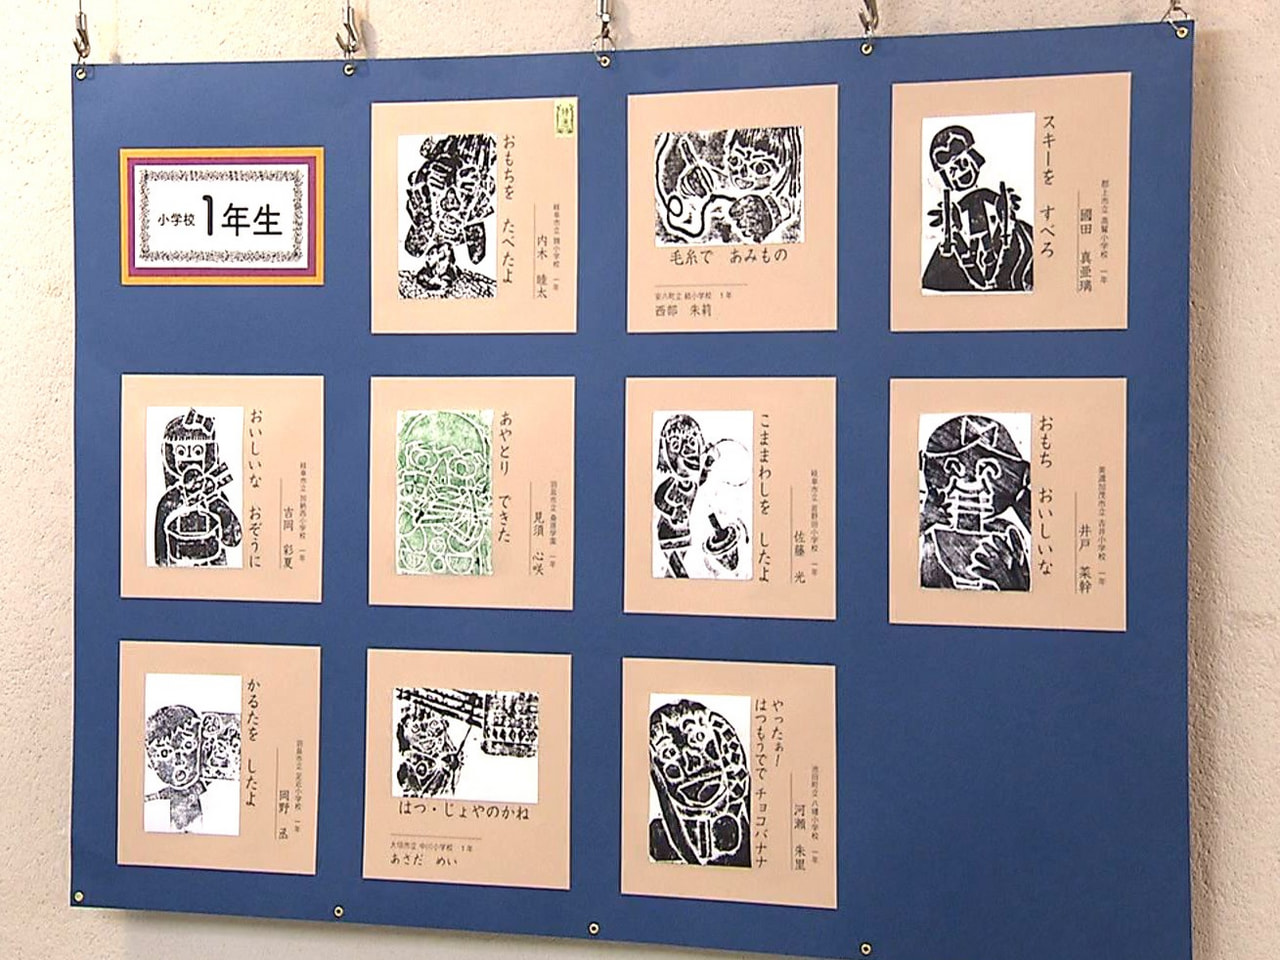 県内の小中学生による冬休みの生活をテーマにした版画の作品展が岐阜市で始まりました...